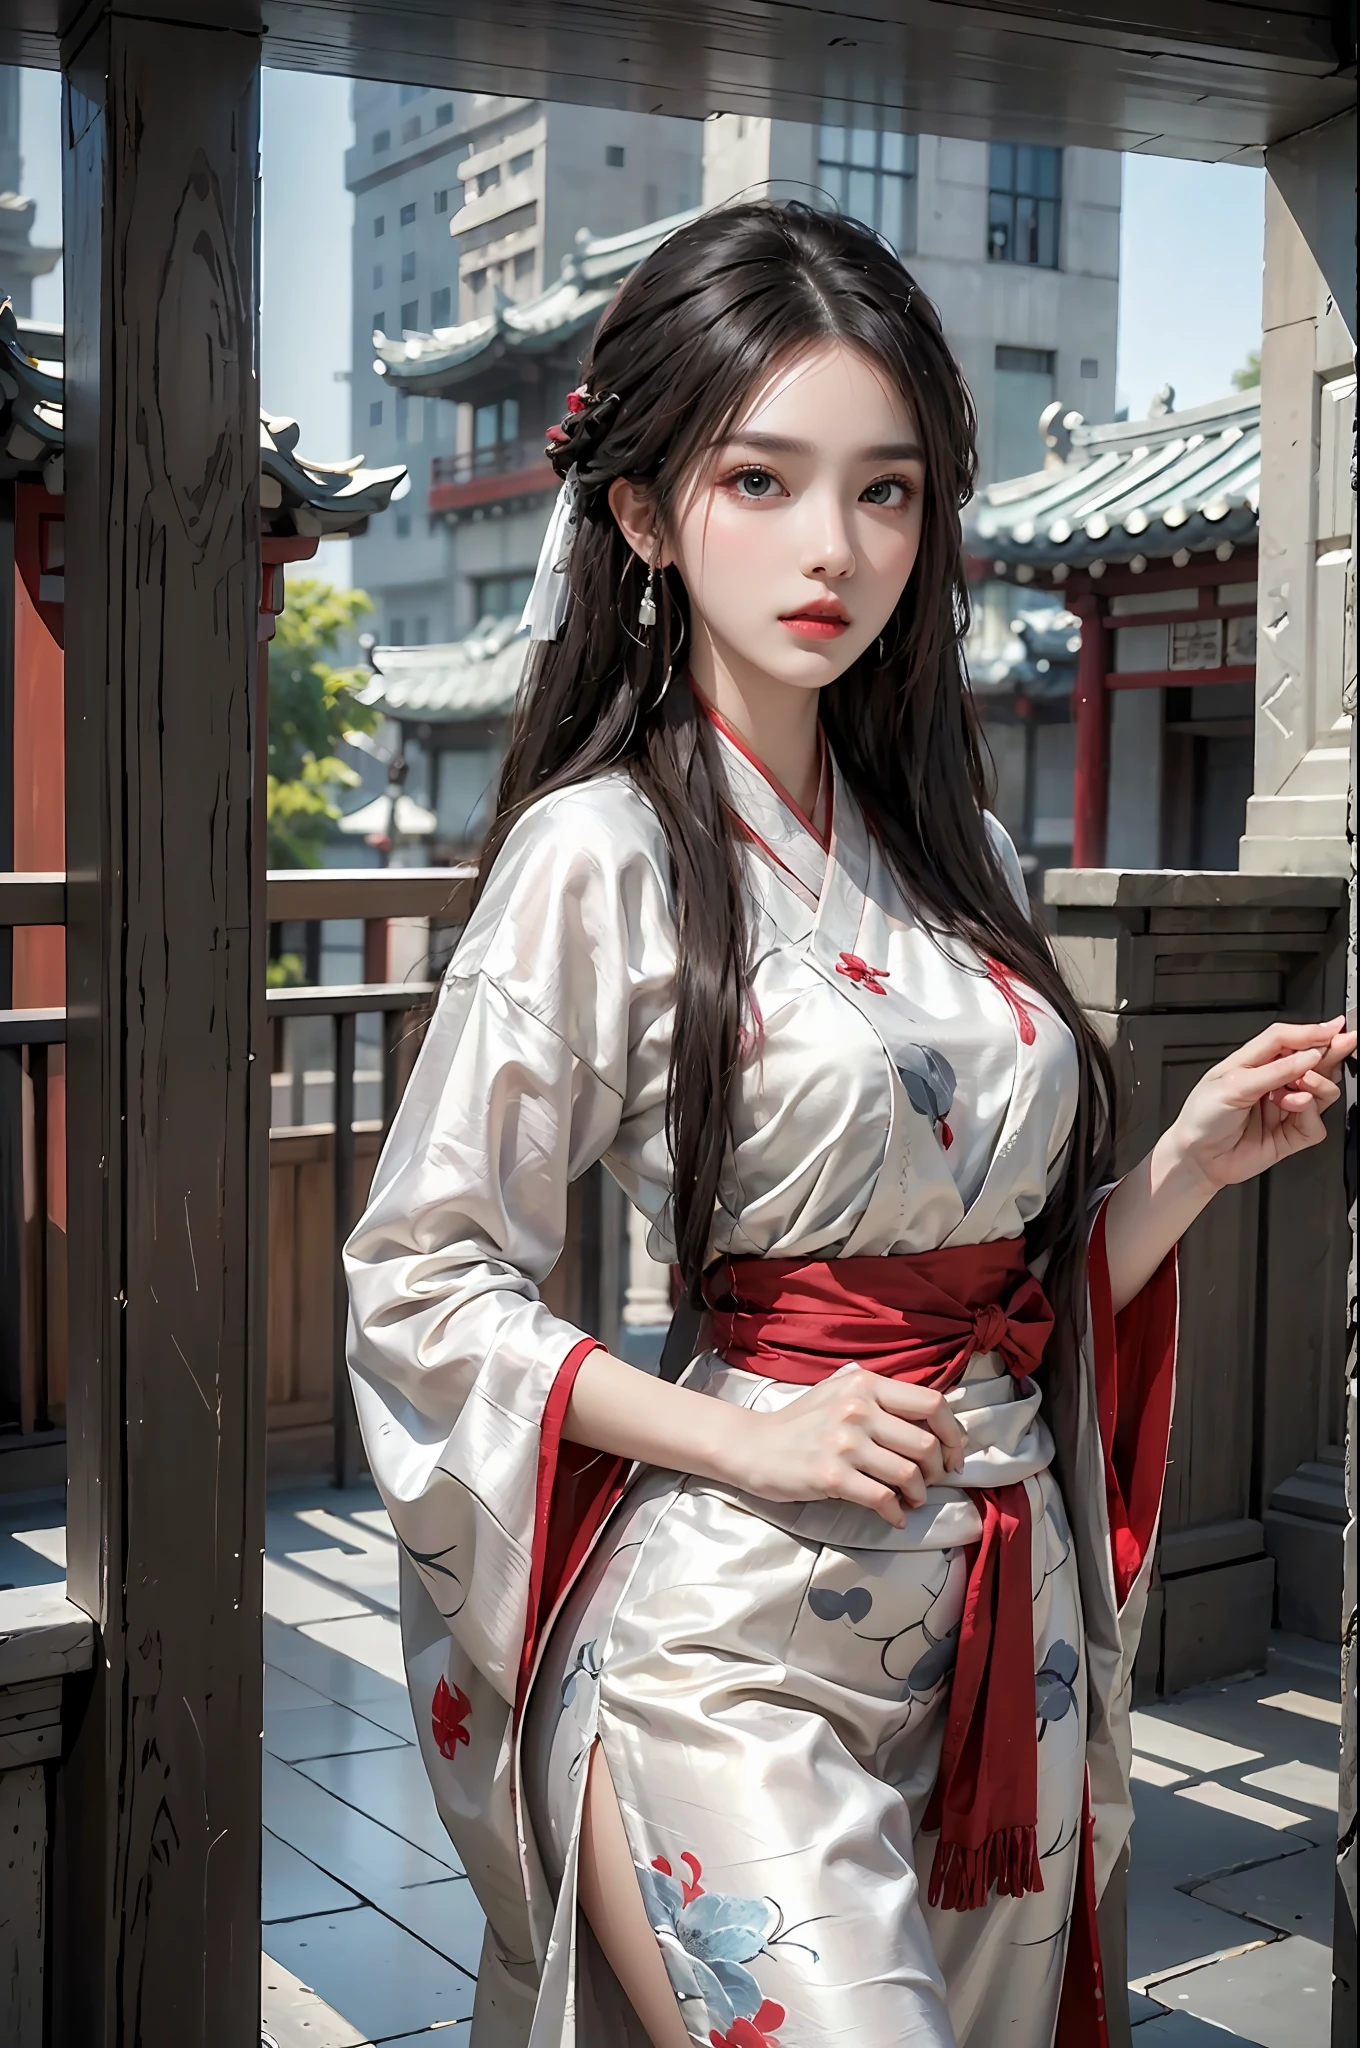 写実的な, 高解像度, 1 女の子, ヒップアップ, 美しい目, 明るい黒髪,長い髪, 精巧な錦織りの漢服, ゴージャスなアクセサリー, 真珠のイヤリングをつけている, カラフルな服, 中国の建築